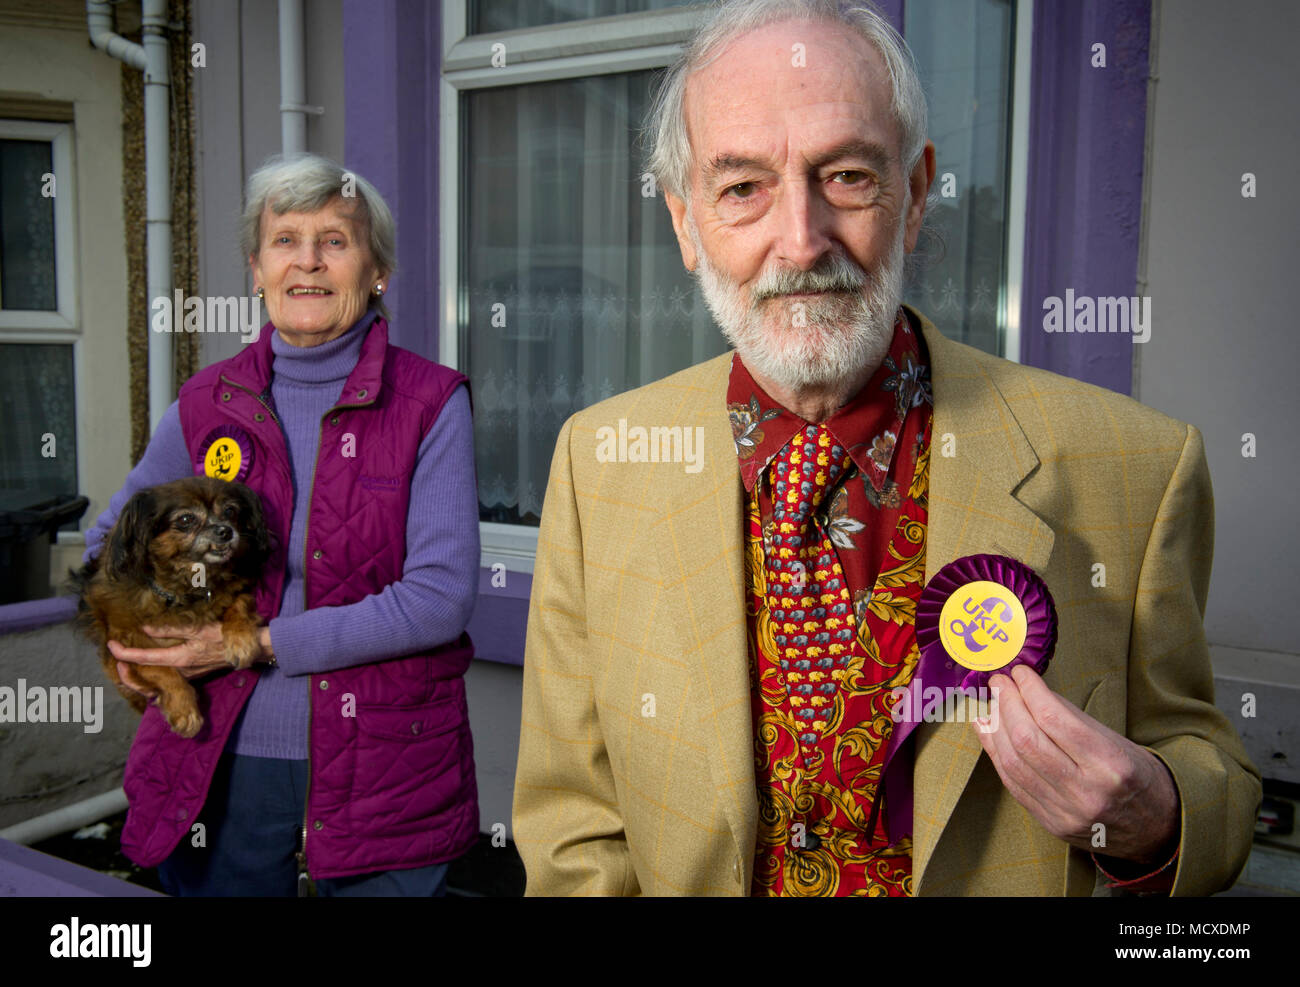 Aubrey & Sheila Attwater, UKIP Mann & Frau Kandidaten in Swindon, Wiltshire, vor ihrem lila (UKIP Farbe) Gemalte Haus fotografiert. Stockfoto